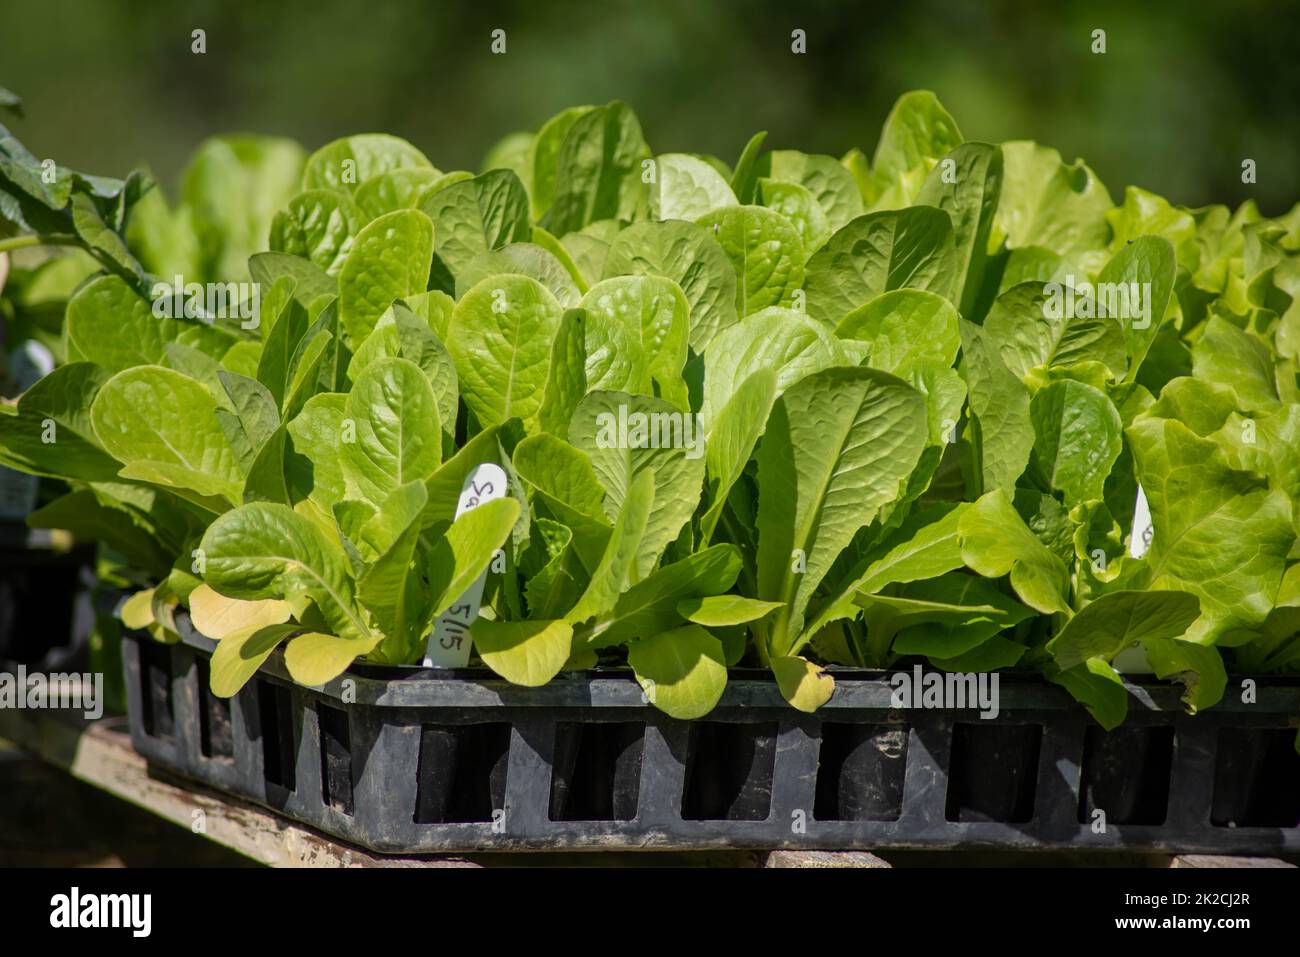 Plántulas de lechuga infantil de hoja verde en bandejas de jardín Foto de stock